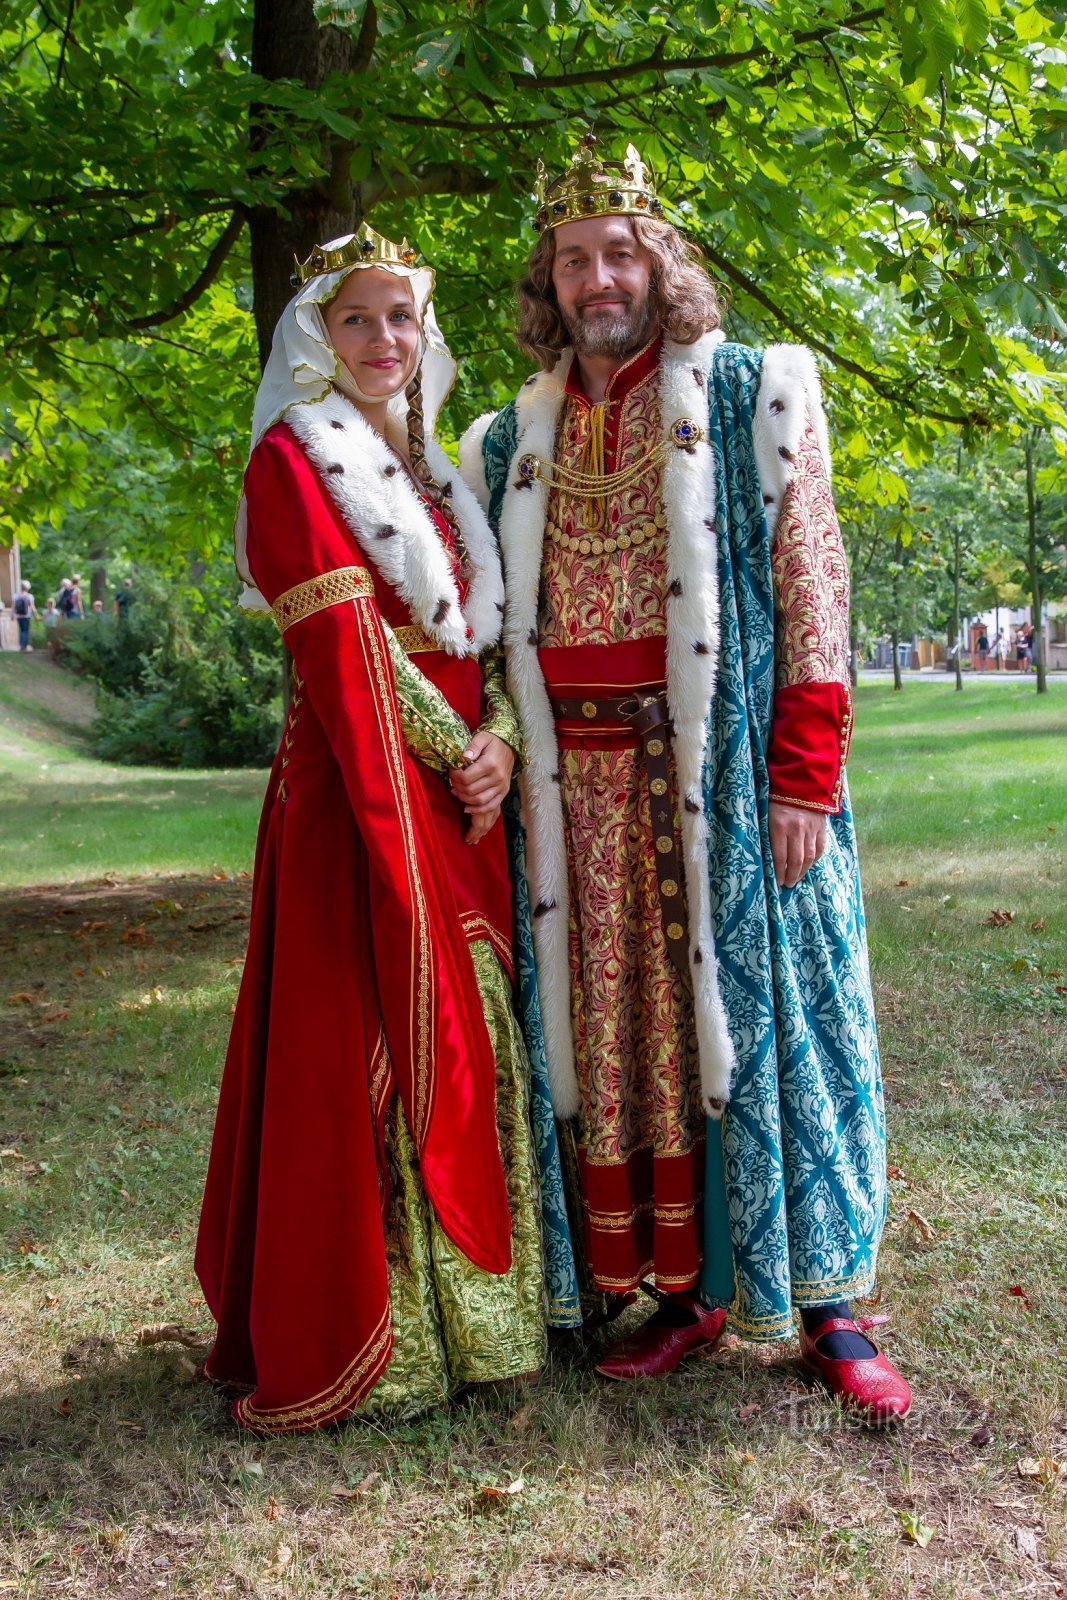 Emperor and Queen, photo Tomáš Krucký